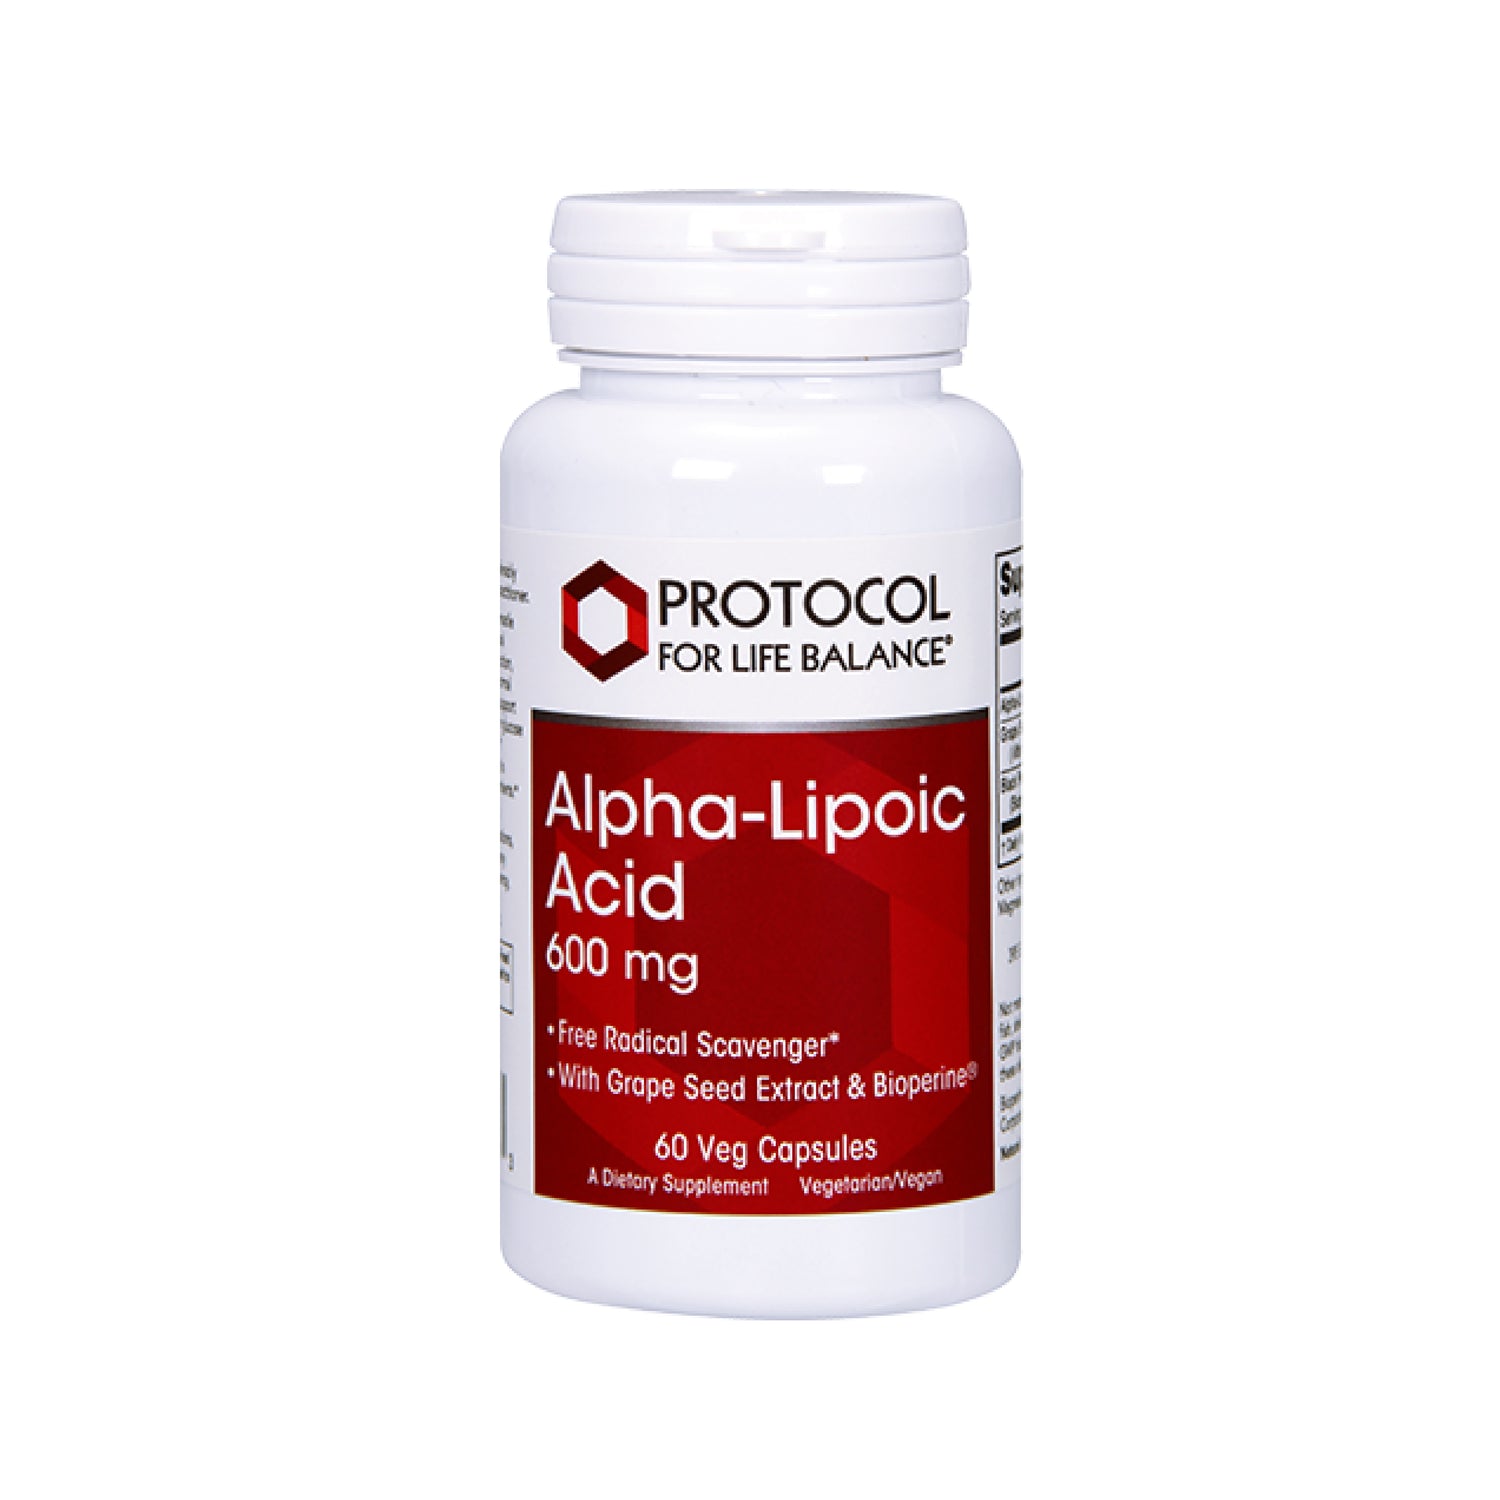 Protocol for Life Balance, Alpha-Lipoic Acid, 600 mg, 60 Veg Capsules - Bloom Concept